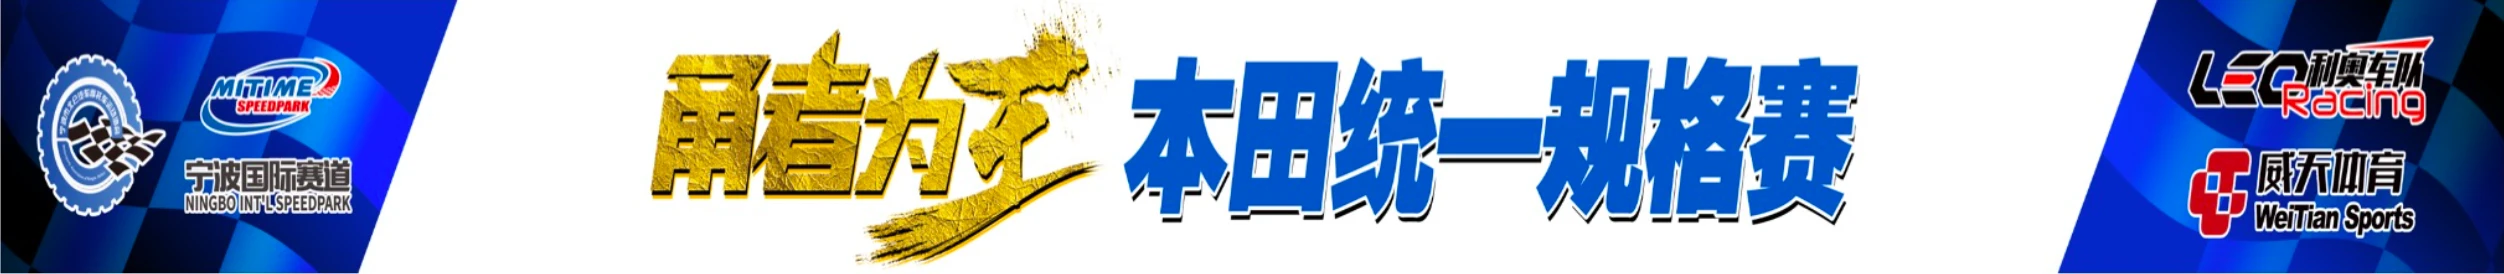 Honda Cup China / 甬者為王本田統一規格賽